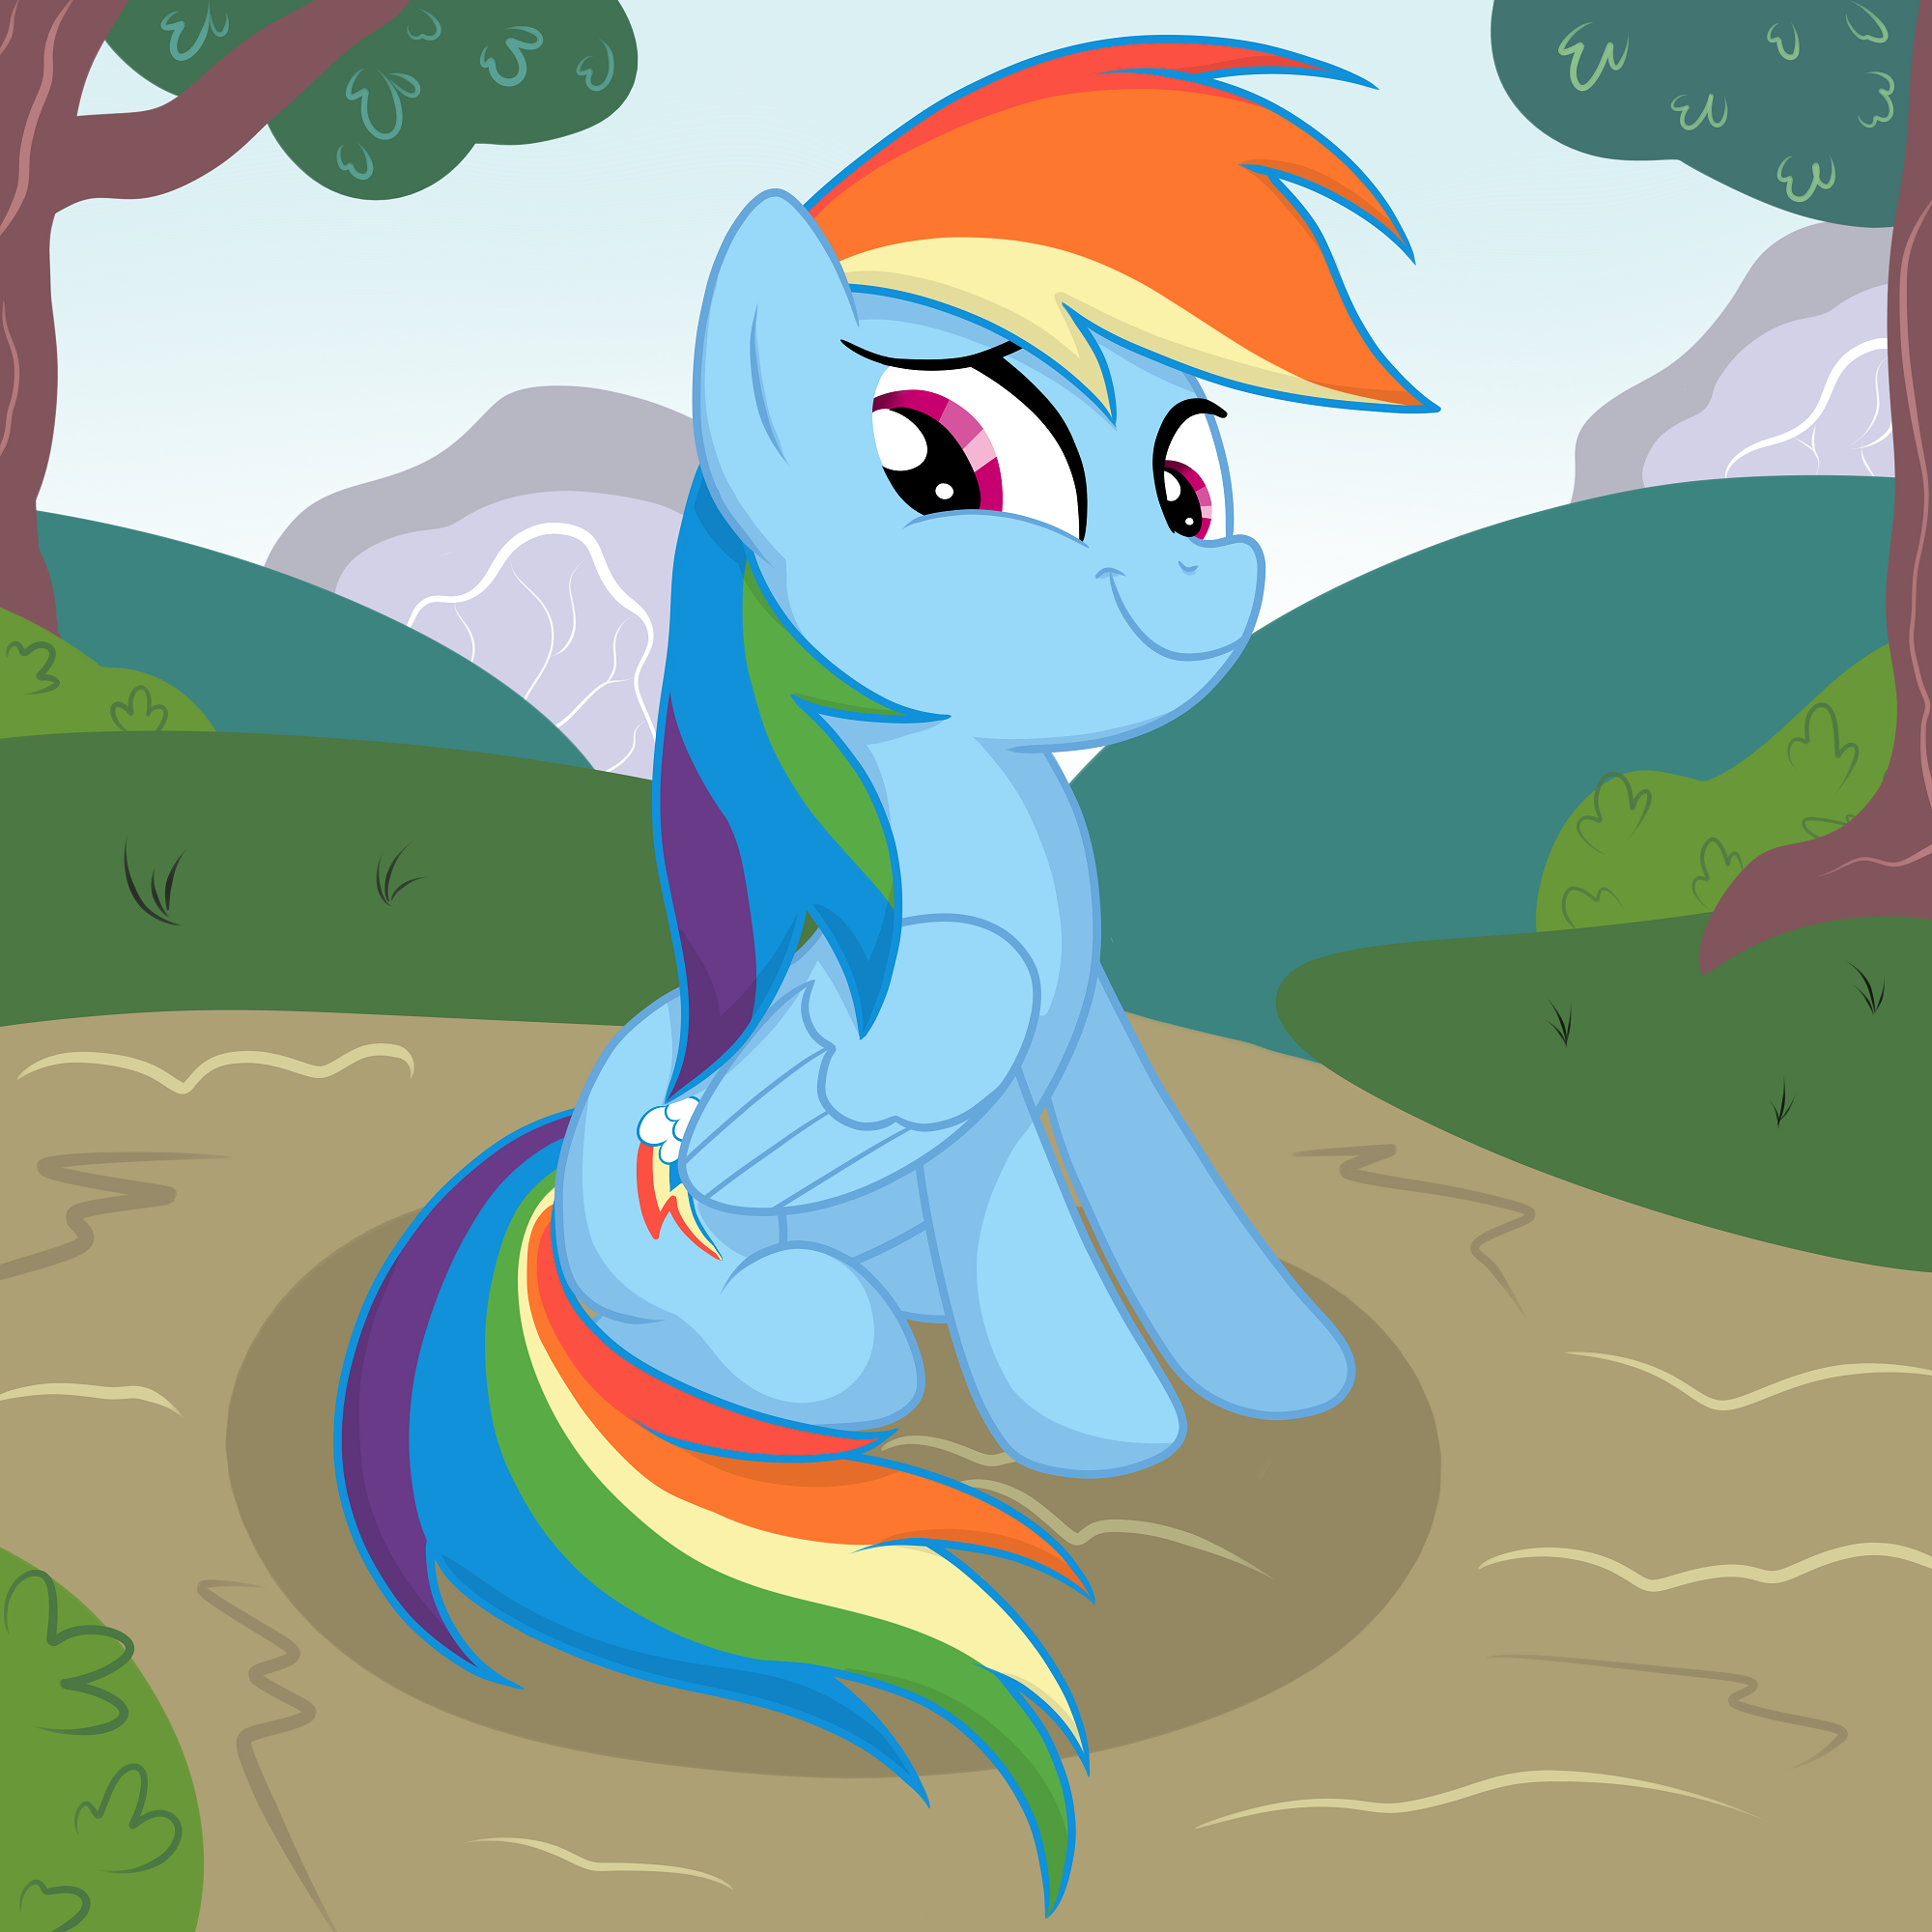 [Obrázek: My_little_pony_rainbow_dash_desktop_2000...030760.png]